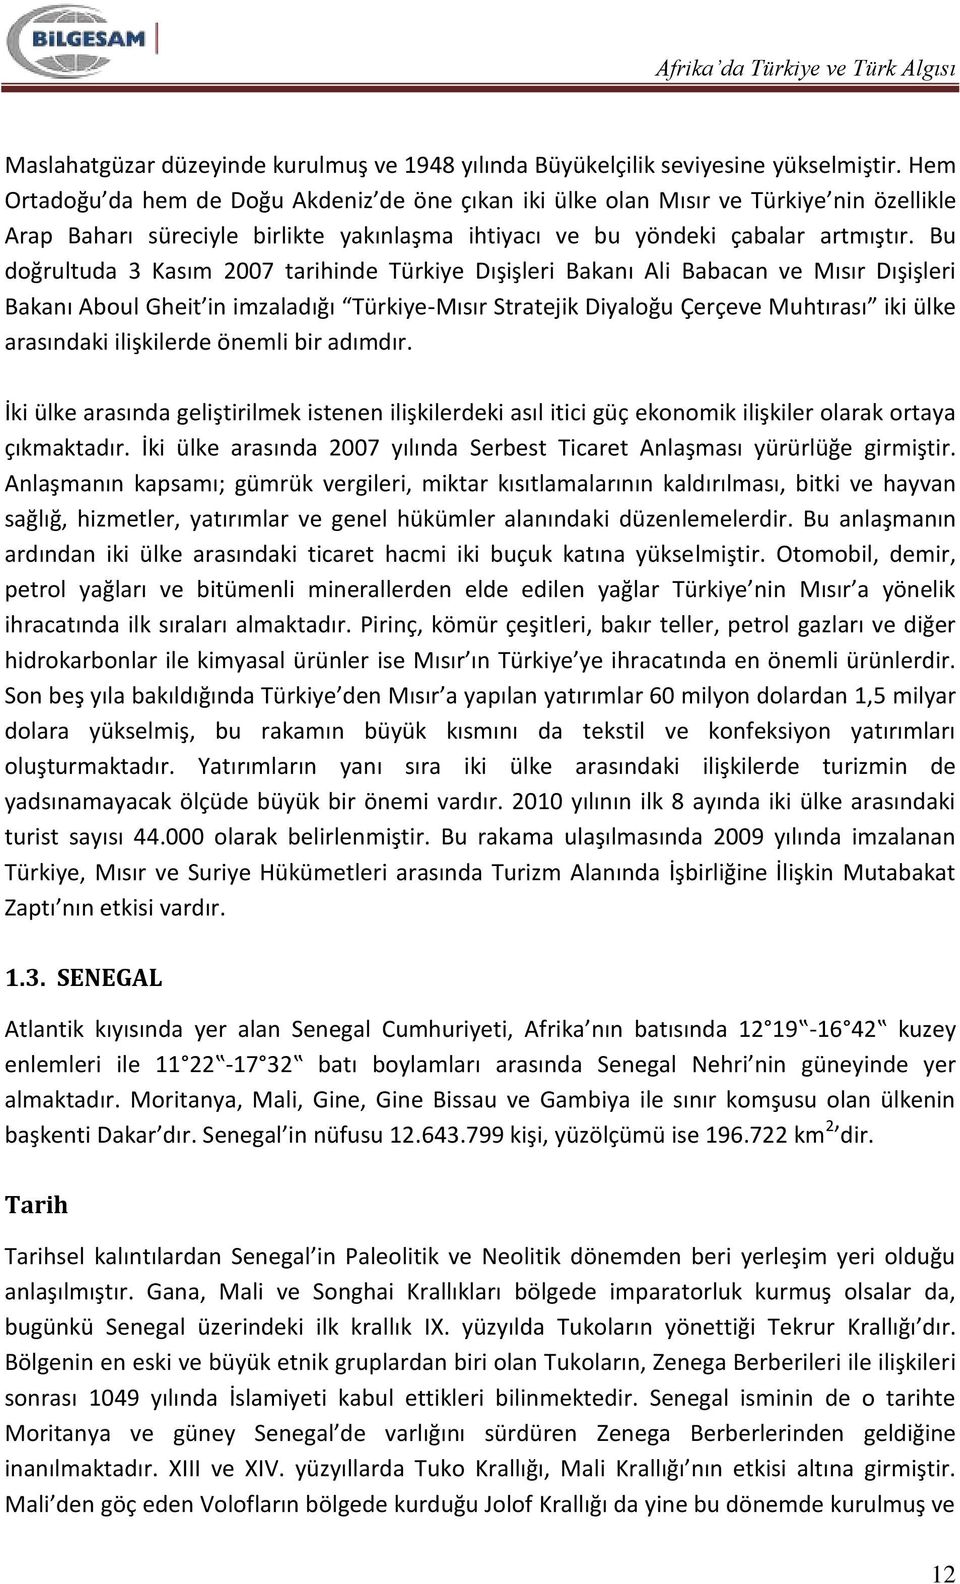 Bu doğrultuda 3 Kasım 2007 tarihinde Türkiye Dışişleri Bakanı Ali Babacan ve Mısır Dışişleri Bakanı Aboul Gheit in imzaladığı Türkiye-Mısır Stratejik Diyaloğu Çerçeve Muhtırası iki ülke arasındaki